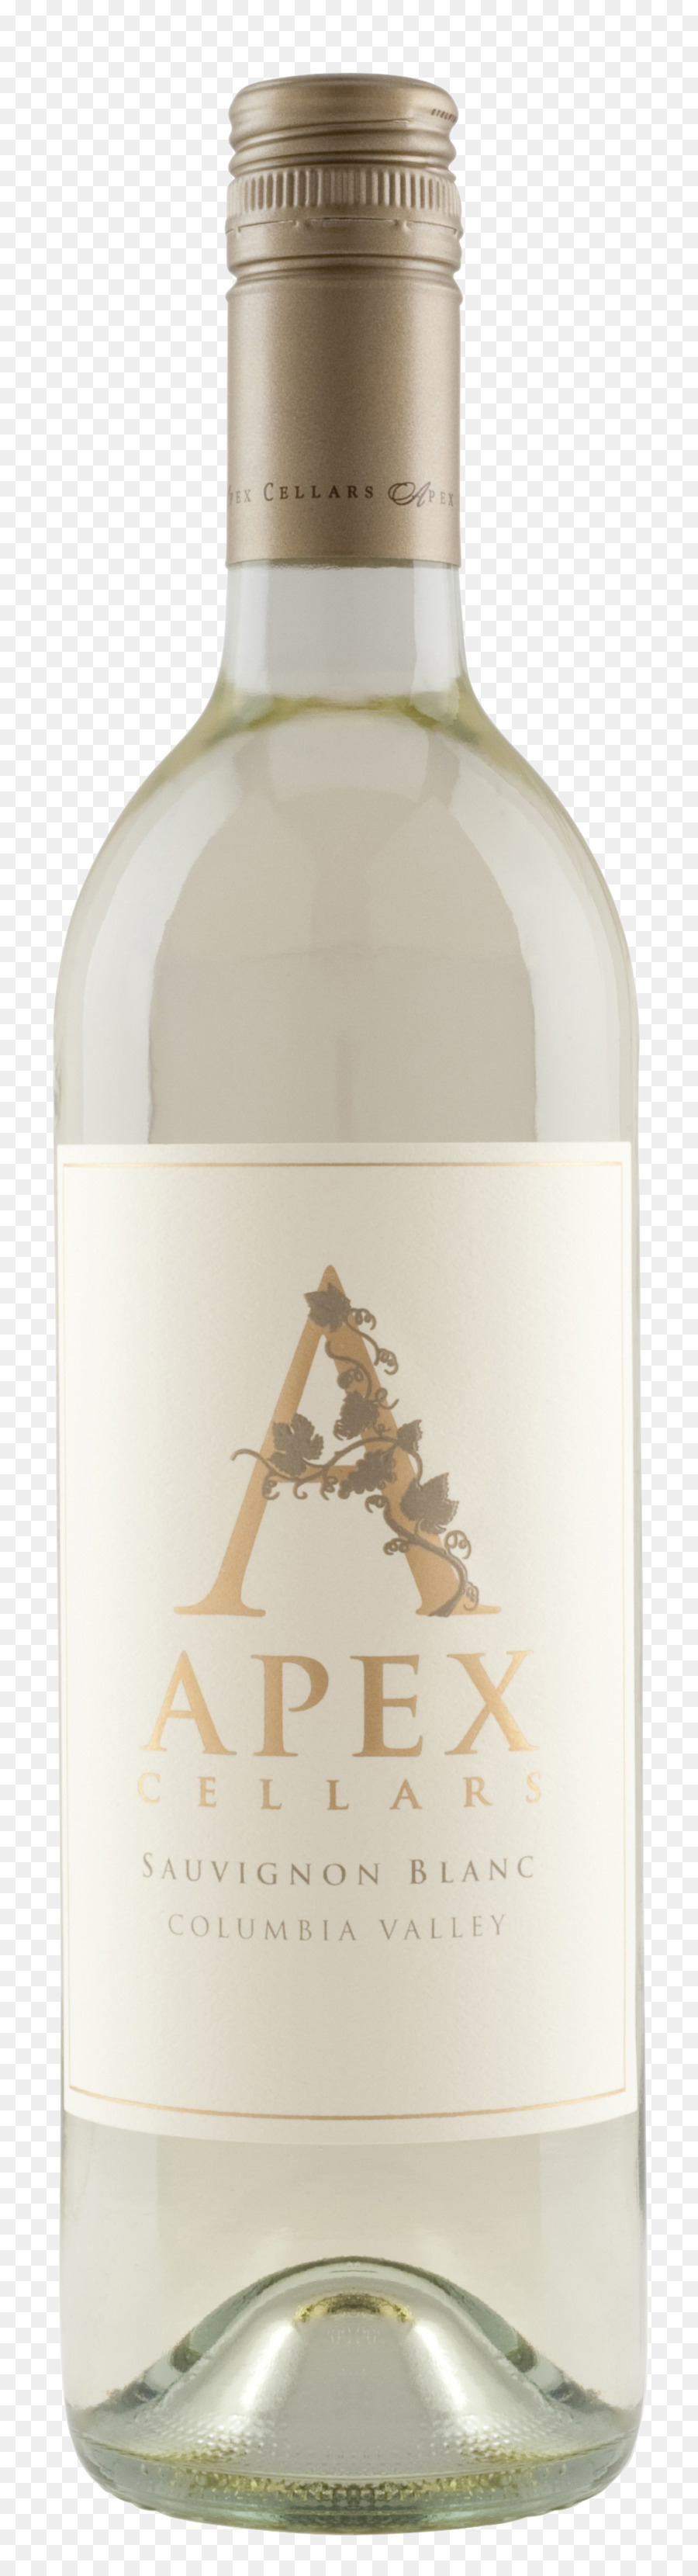 Vin Blanc，Liqueur PNG